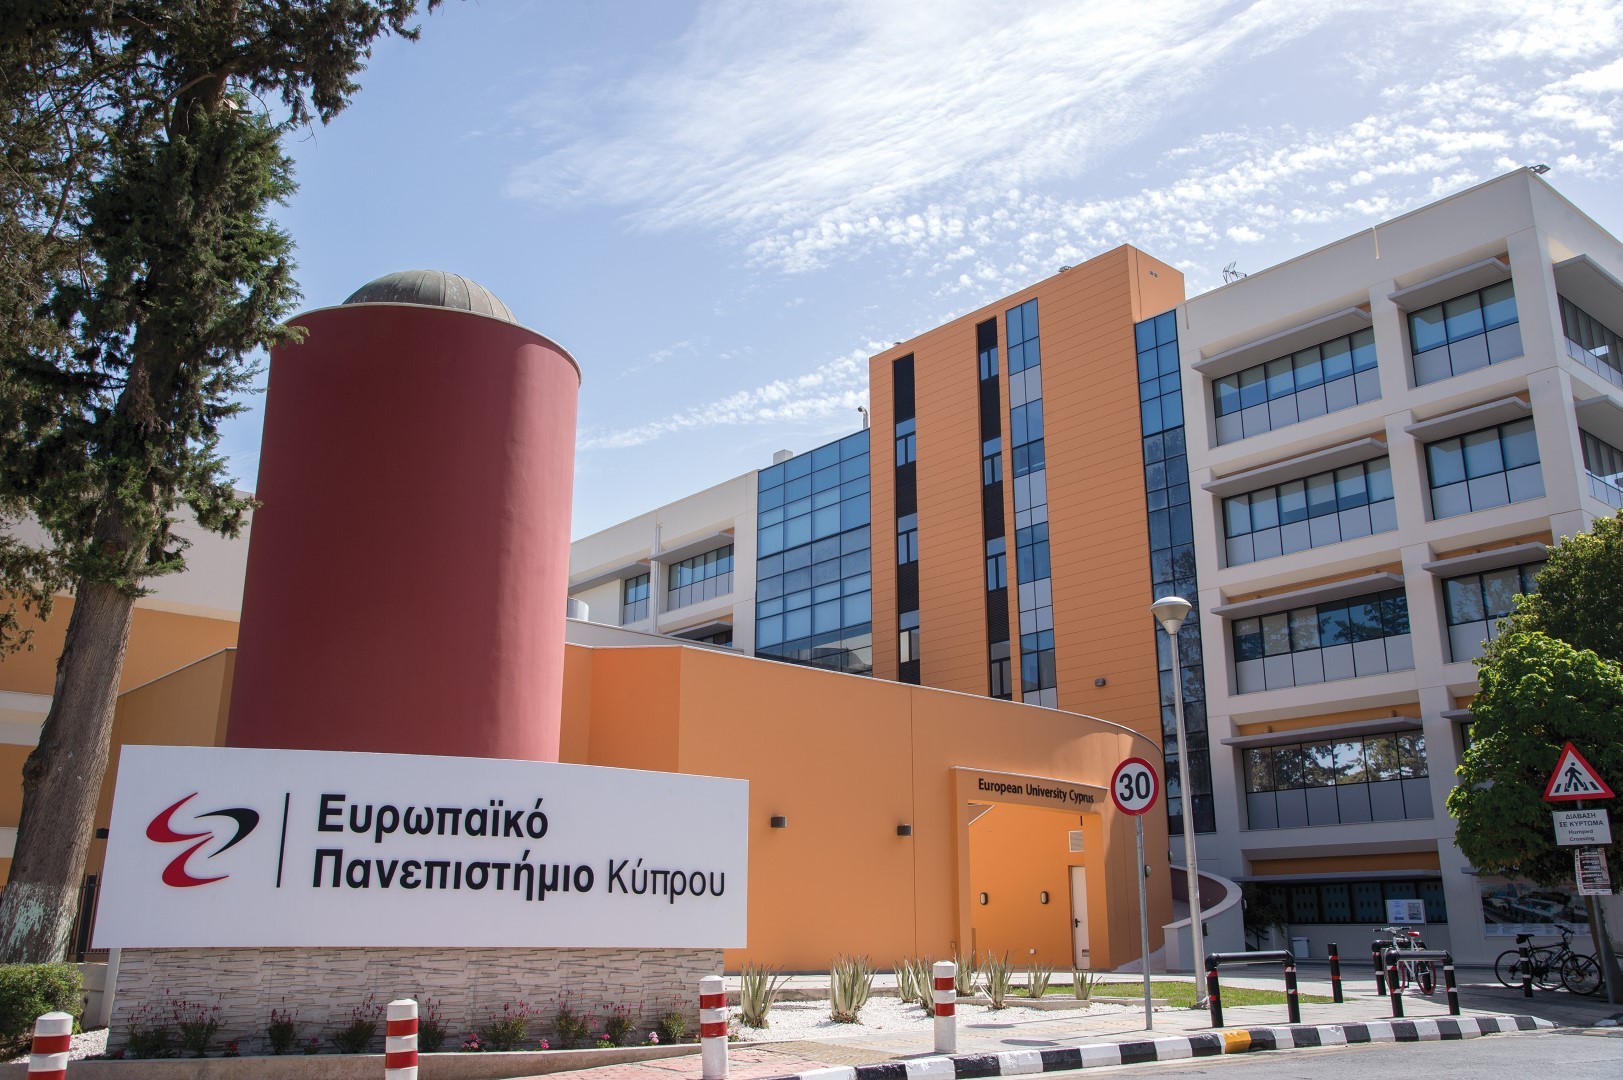 Το Ευρωπαϊκό Πανεπιστήμιο Κύπρου εταίρος σε Ευρωπαϊκό έργο μικτής μάθησης